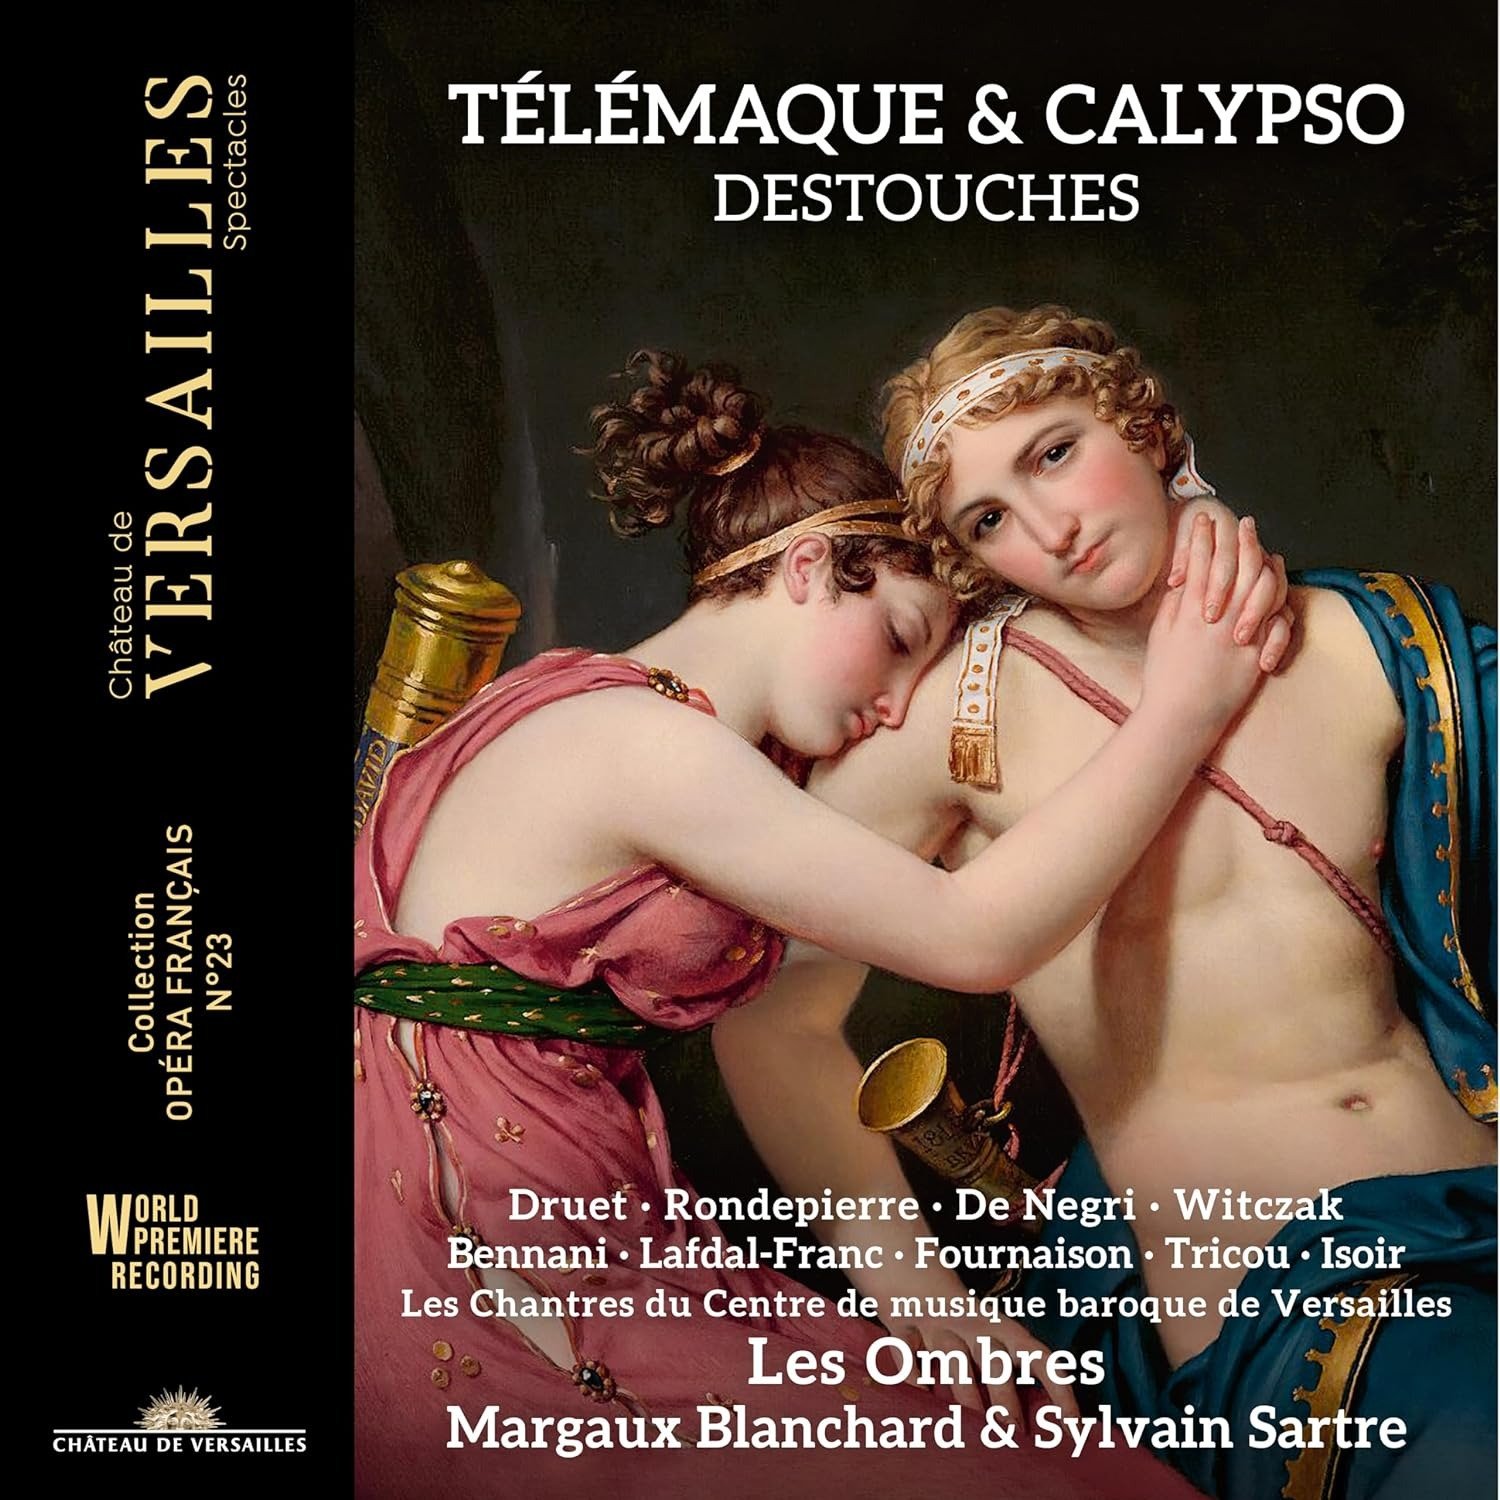 CD Shop - LES OMBRES DESTOUCHES: TELEMAQUE & CALYPSO